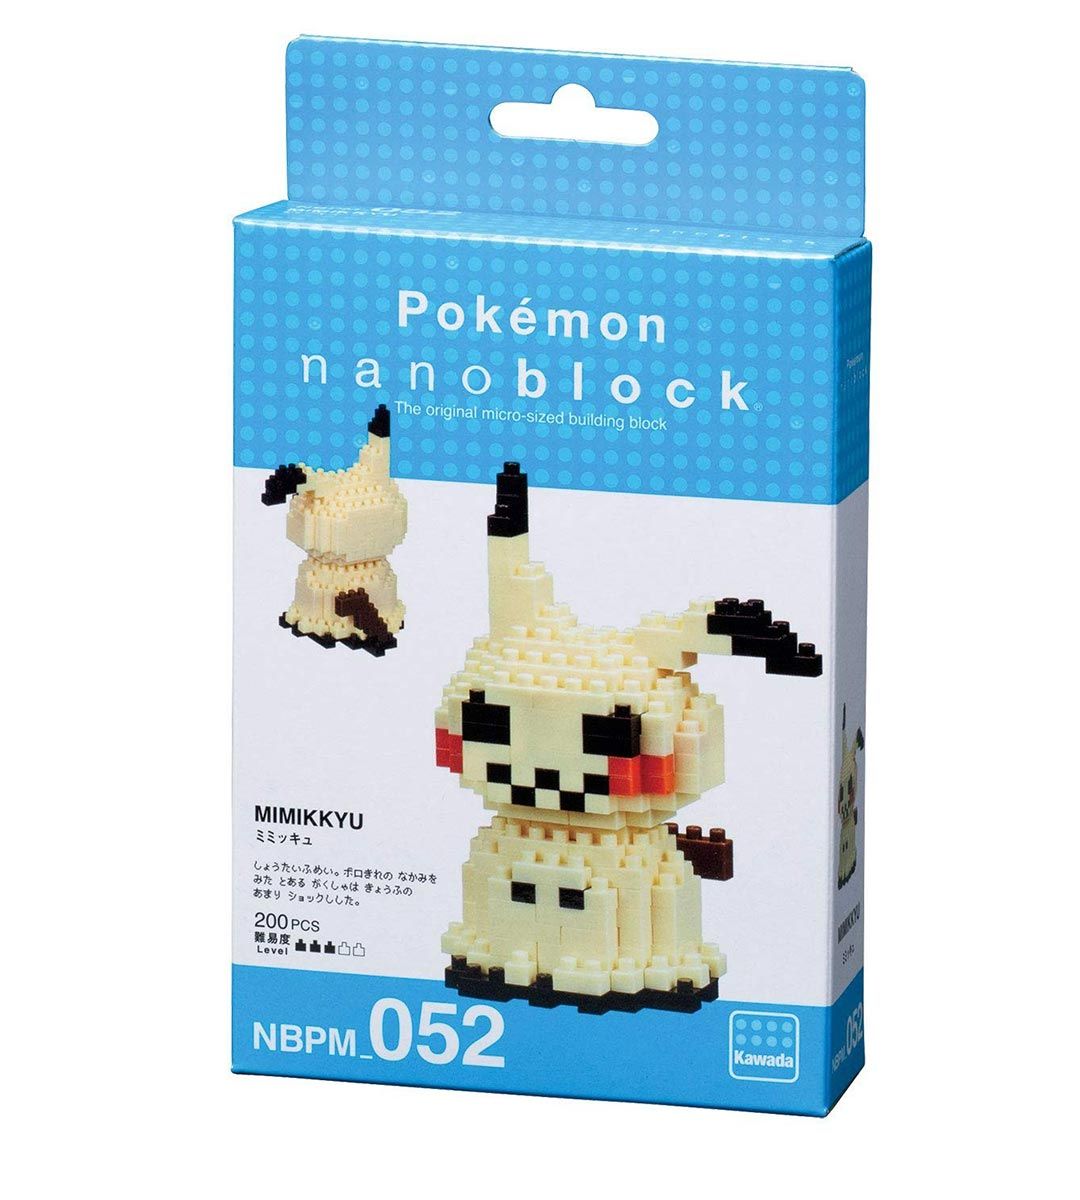 Pokémon x Nanoblock - Mimikkyu